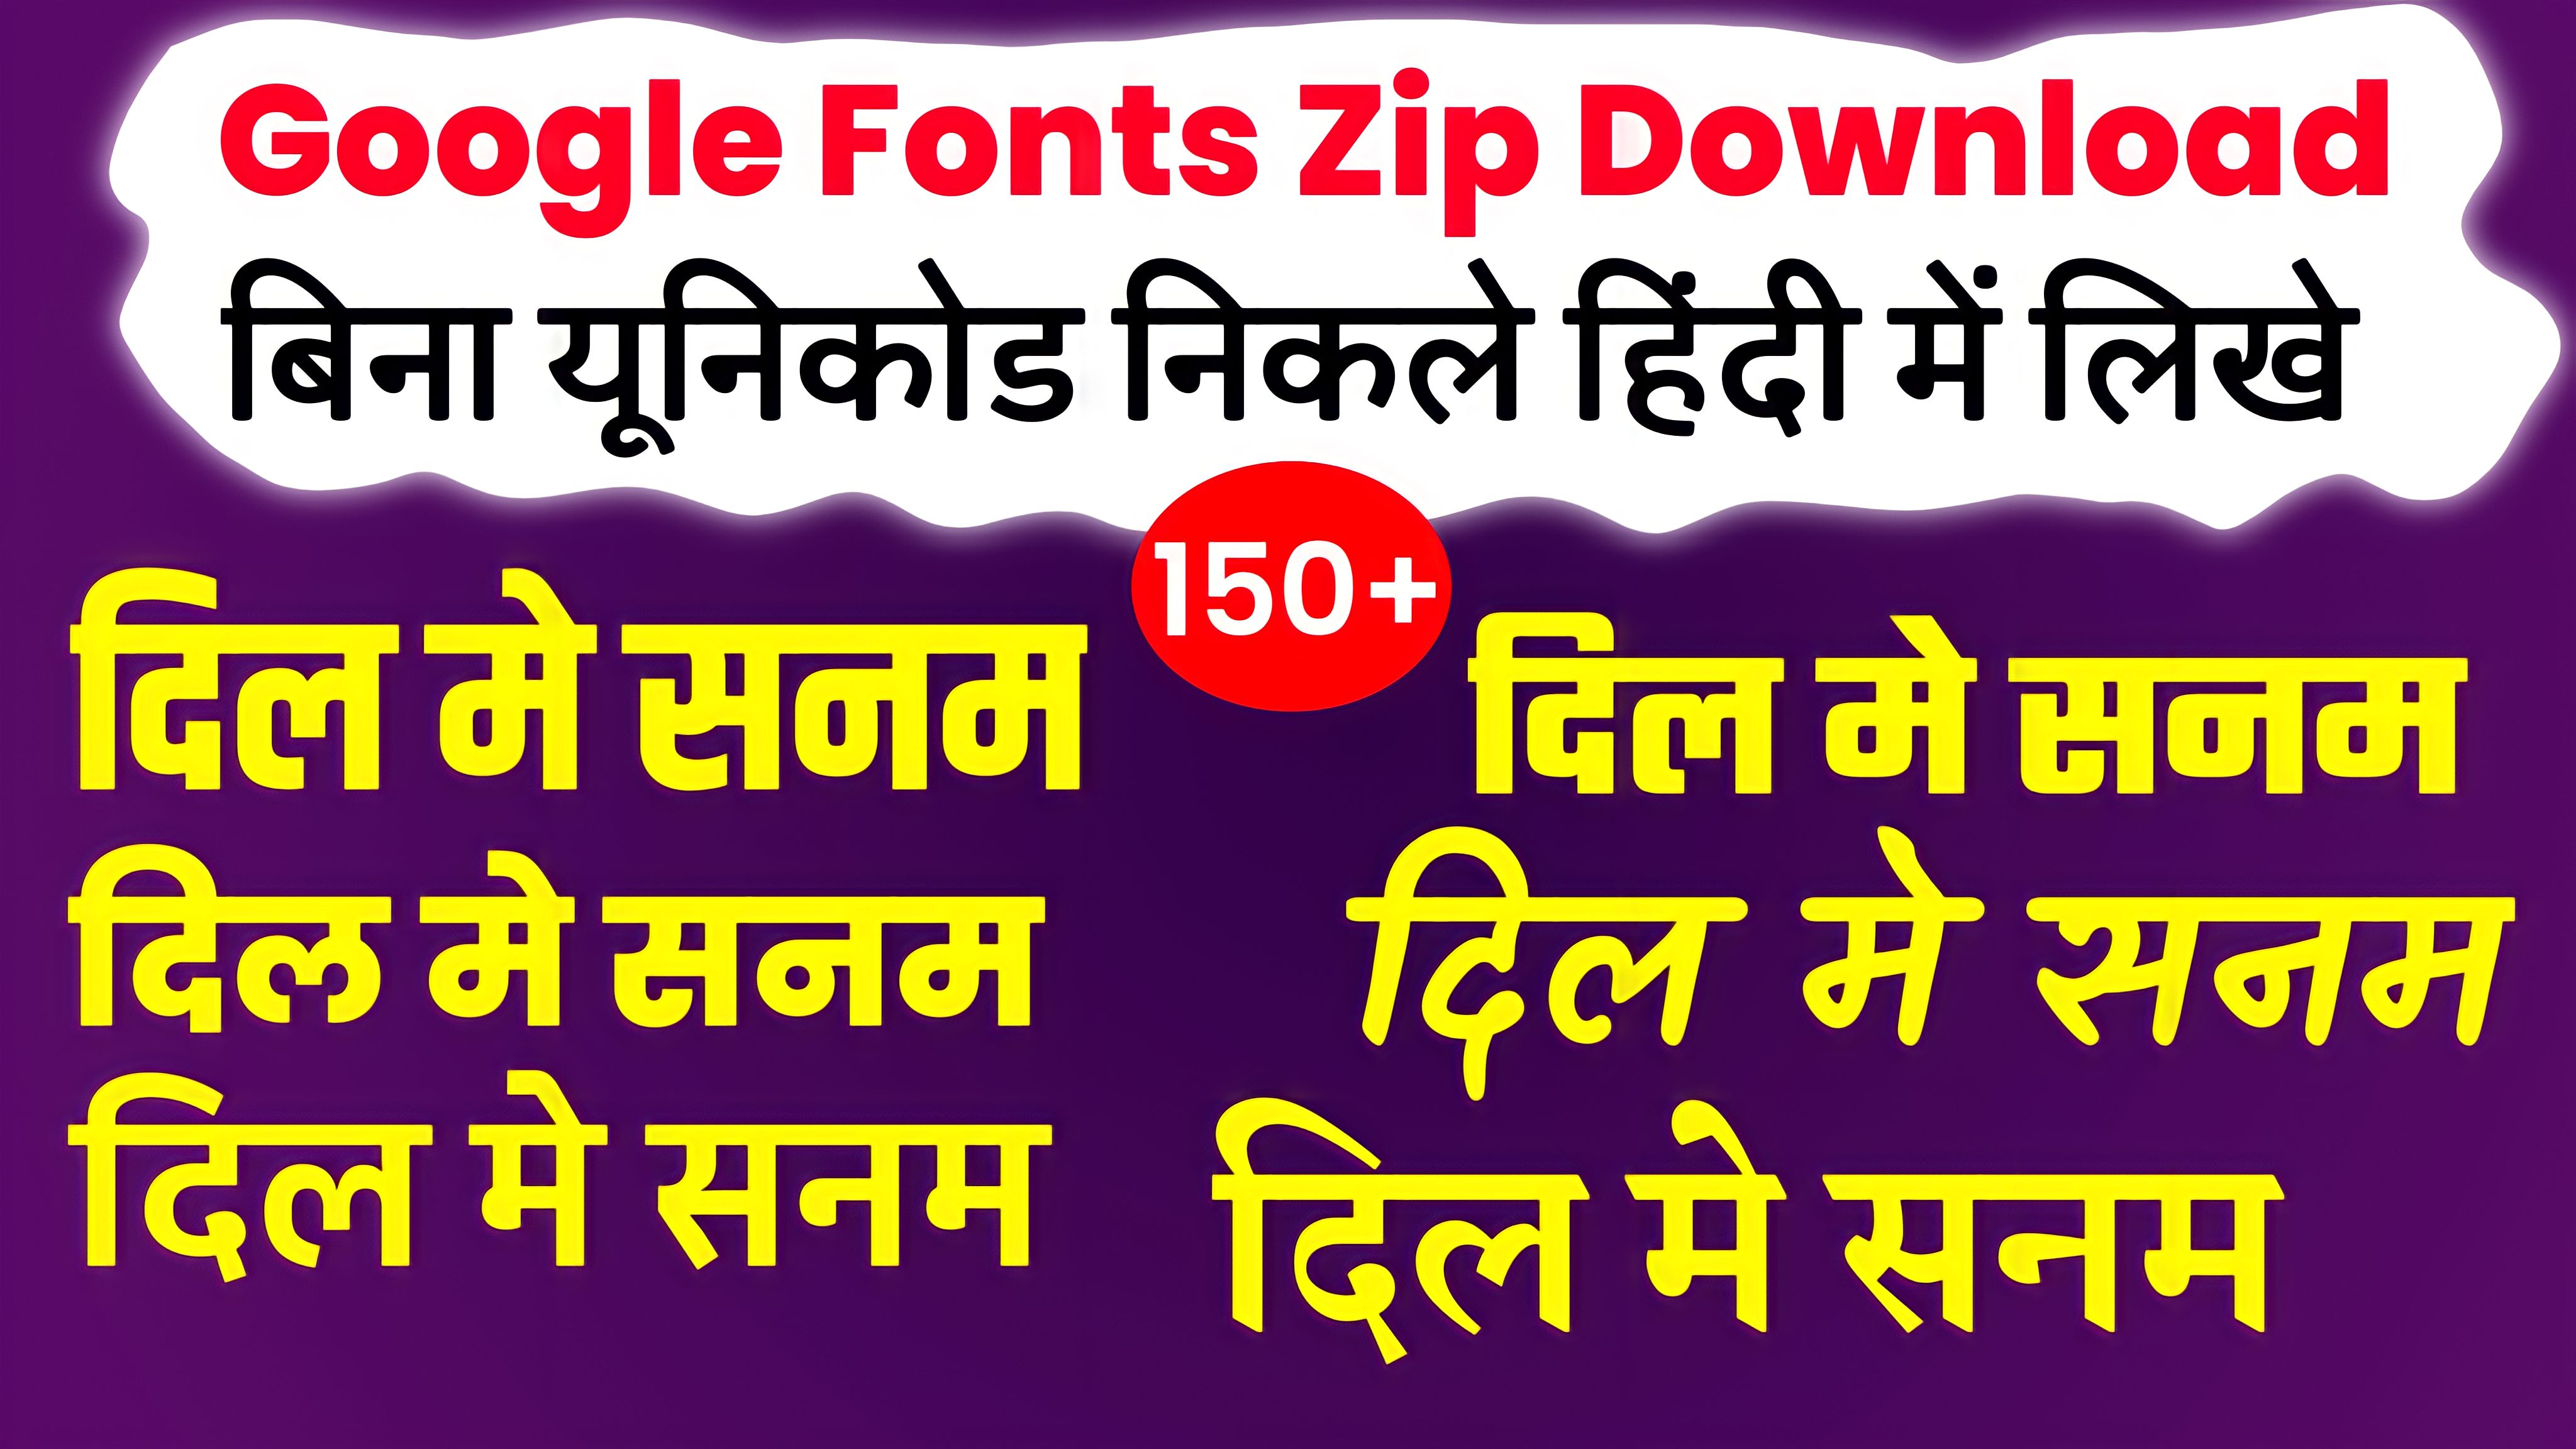 Google Hindi fonts zip file download| free Hindi font download| Pixellab me font kaise add Karen